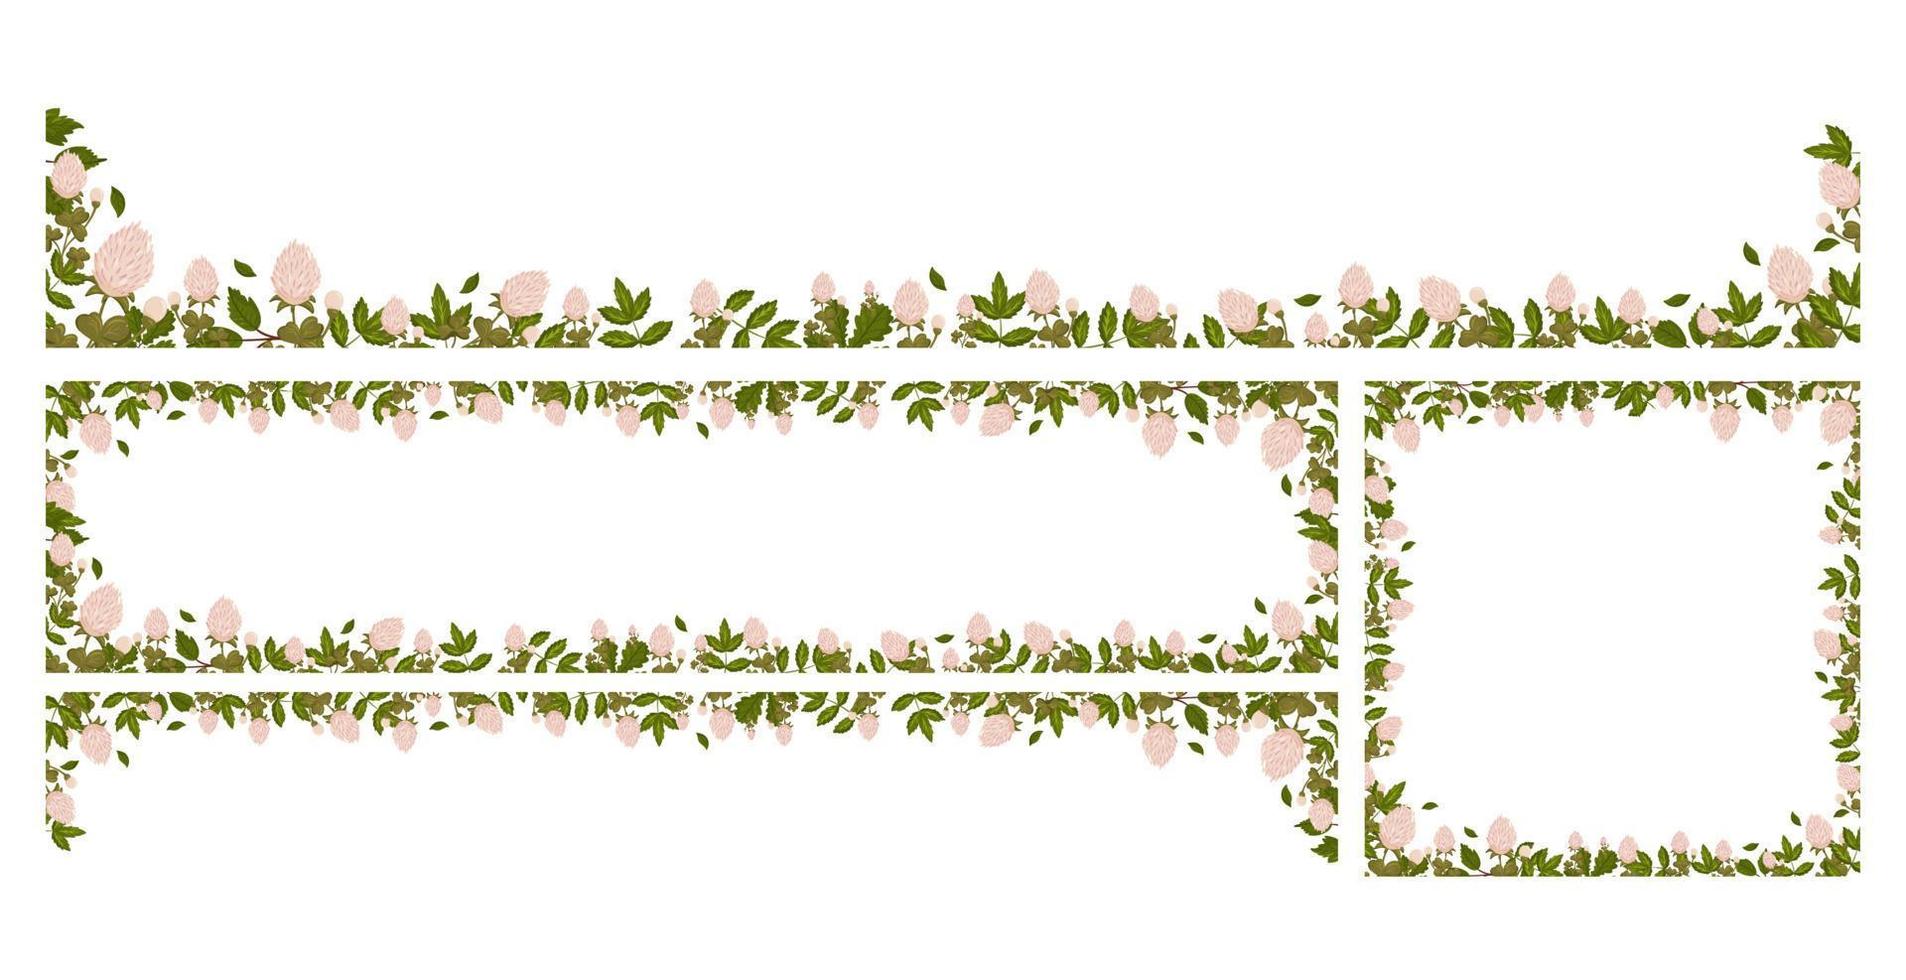 primavera horizontal marcos con trébol flores, trébol y hojas. verano vector pancartas